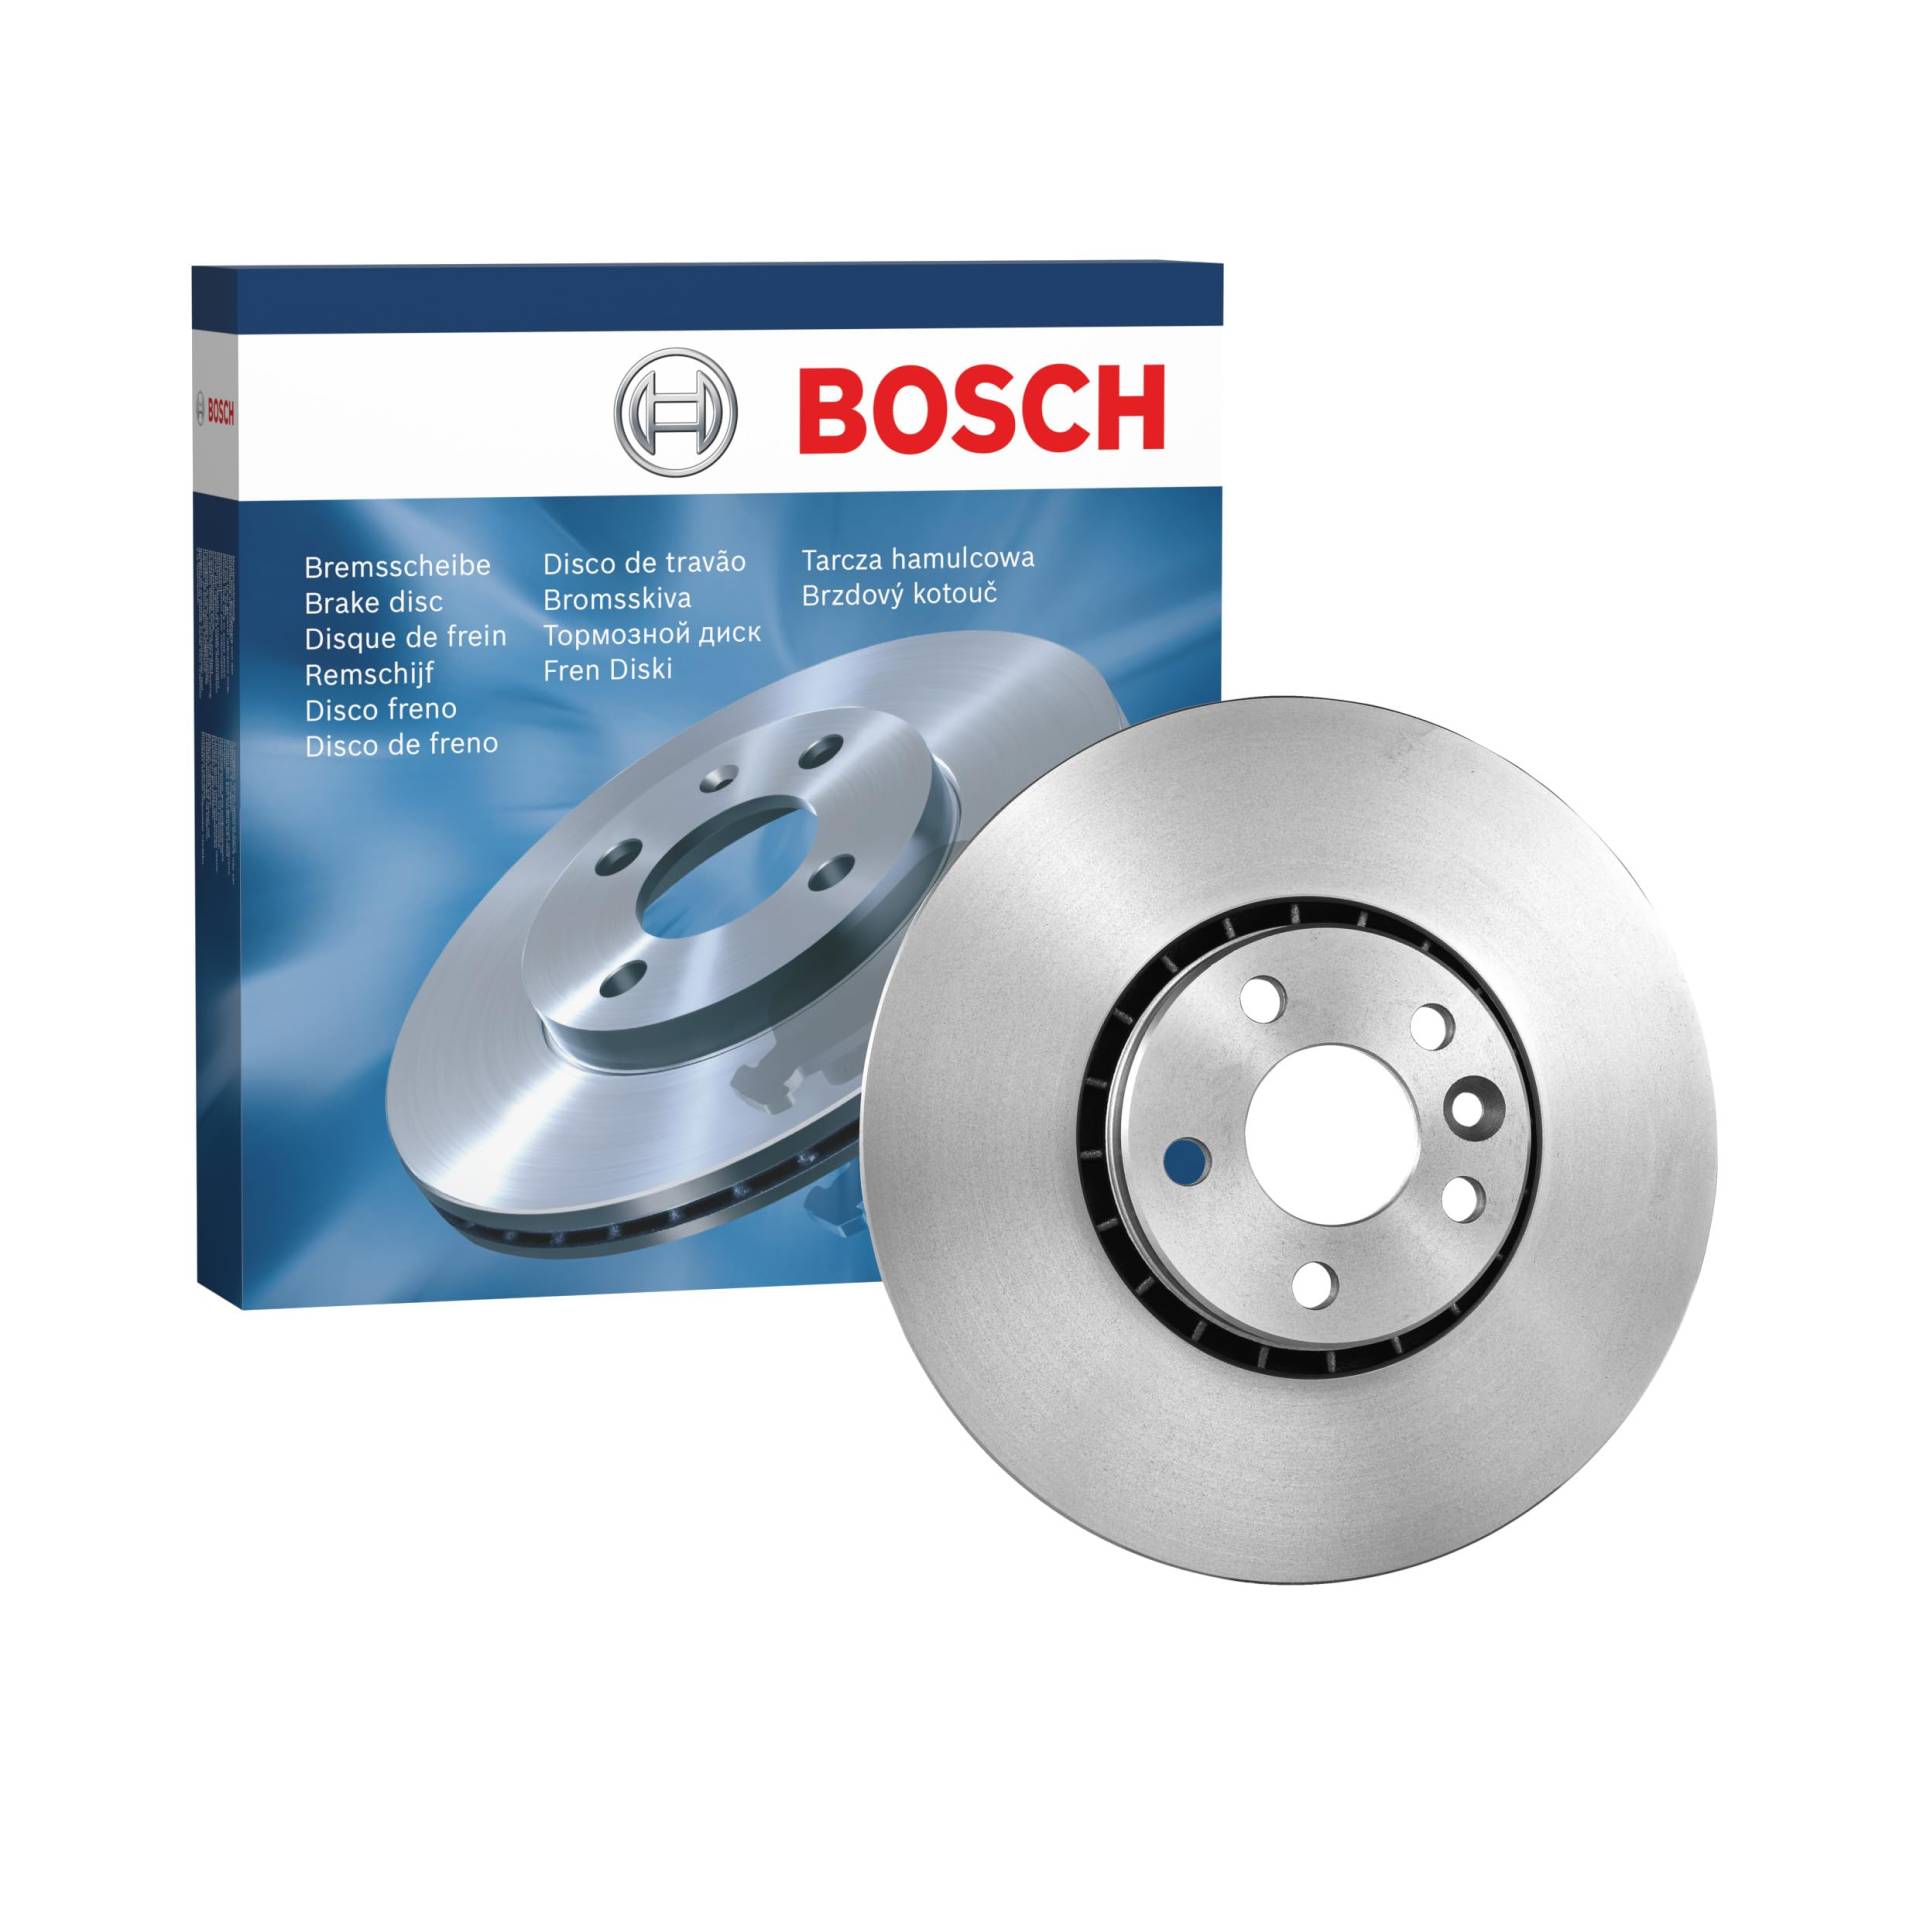 Bosch BD1464 Bremsscheiben - Vorderachse - ECE-R90 Zertifizierung - eine Bremsscheibe von Bosch Automotive